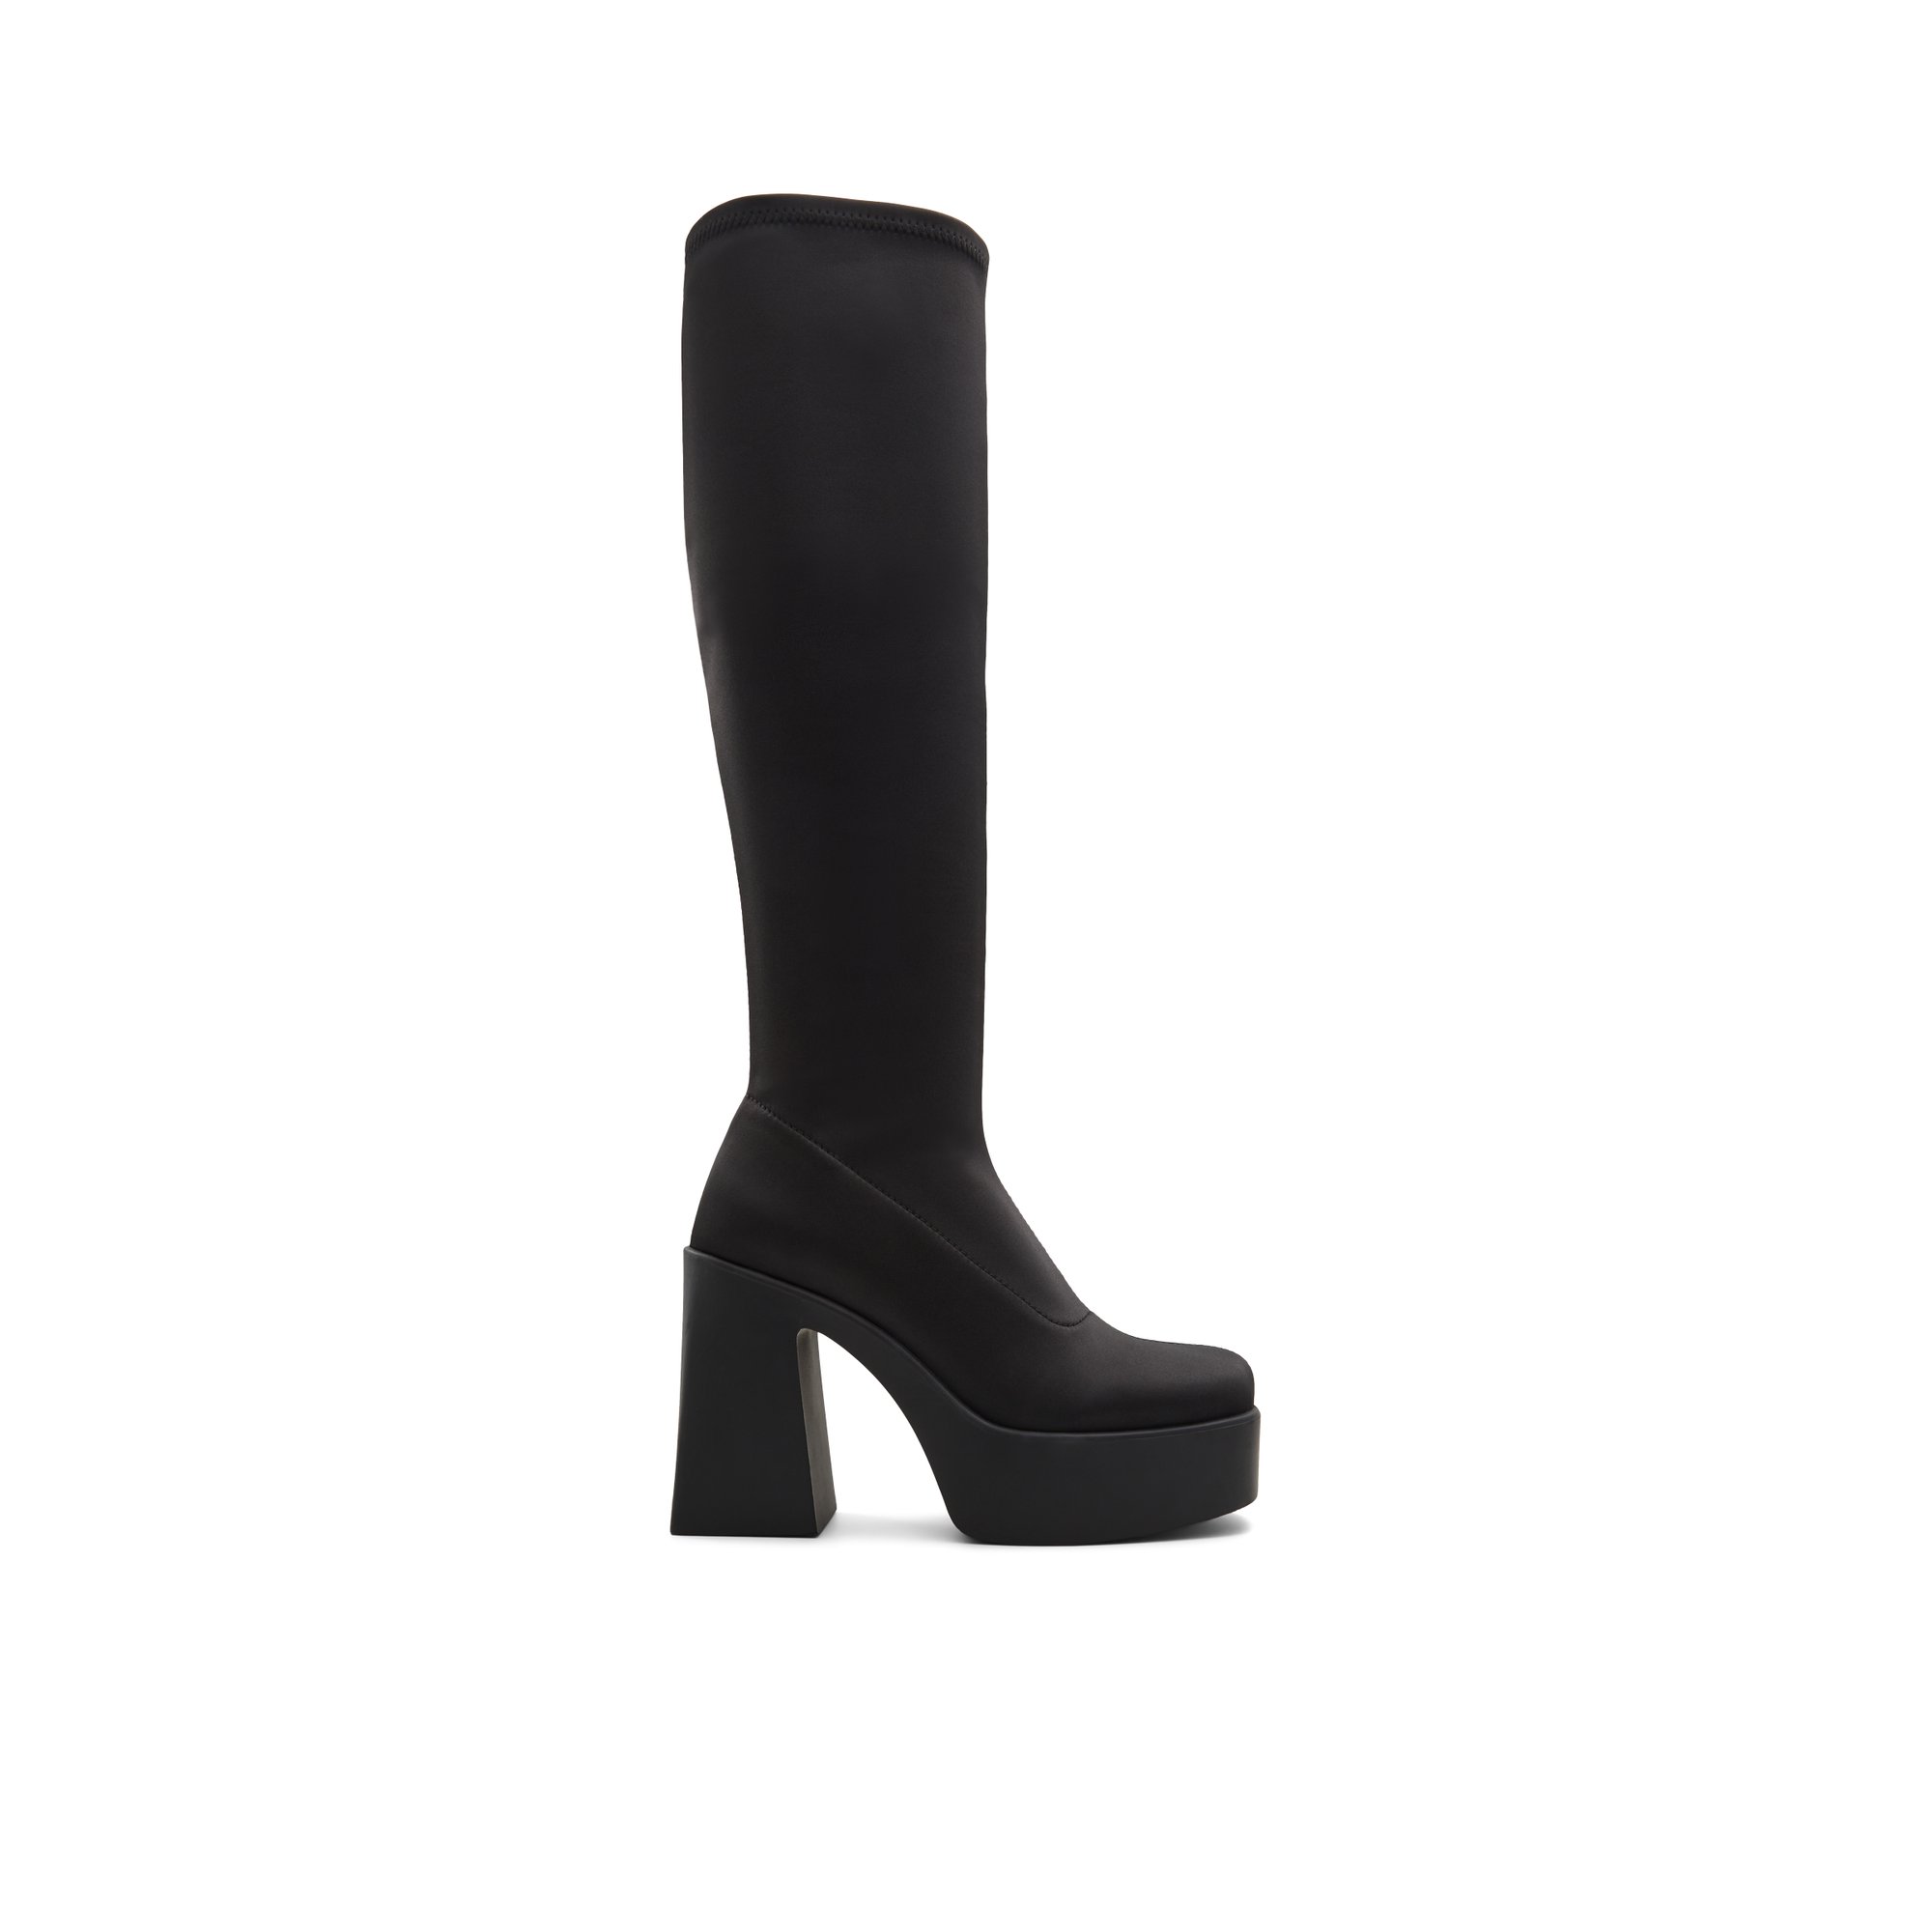 ALDO Moulin - Women's Boots Dress - Black